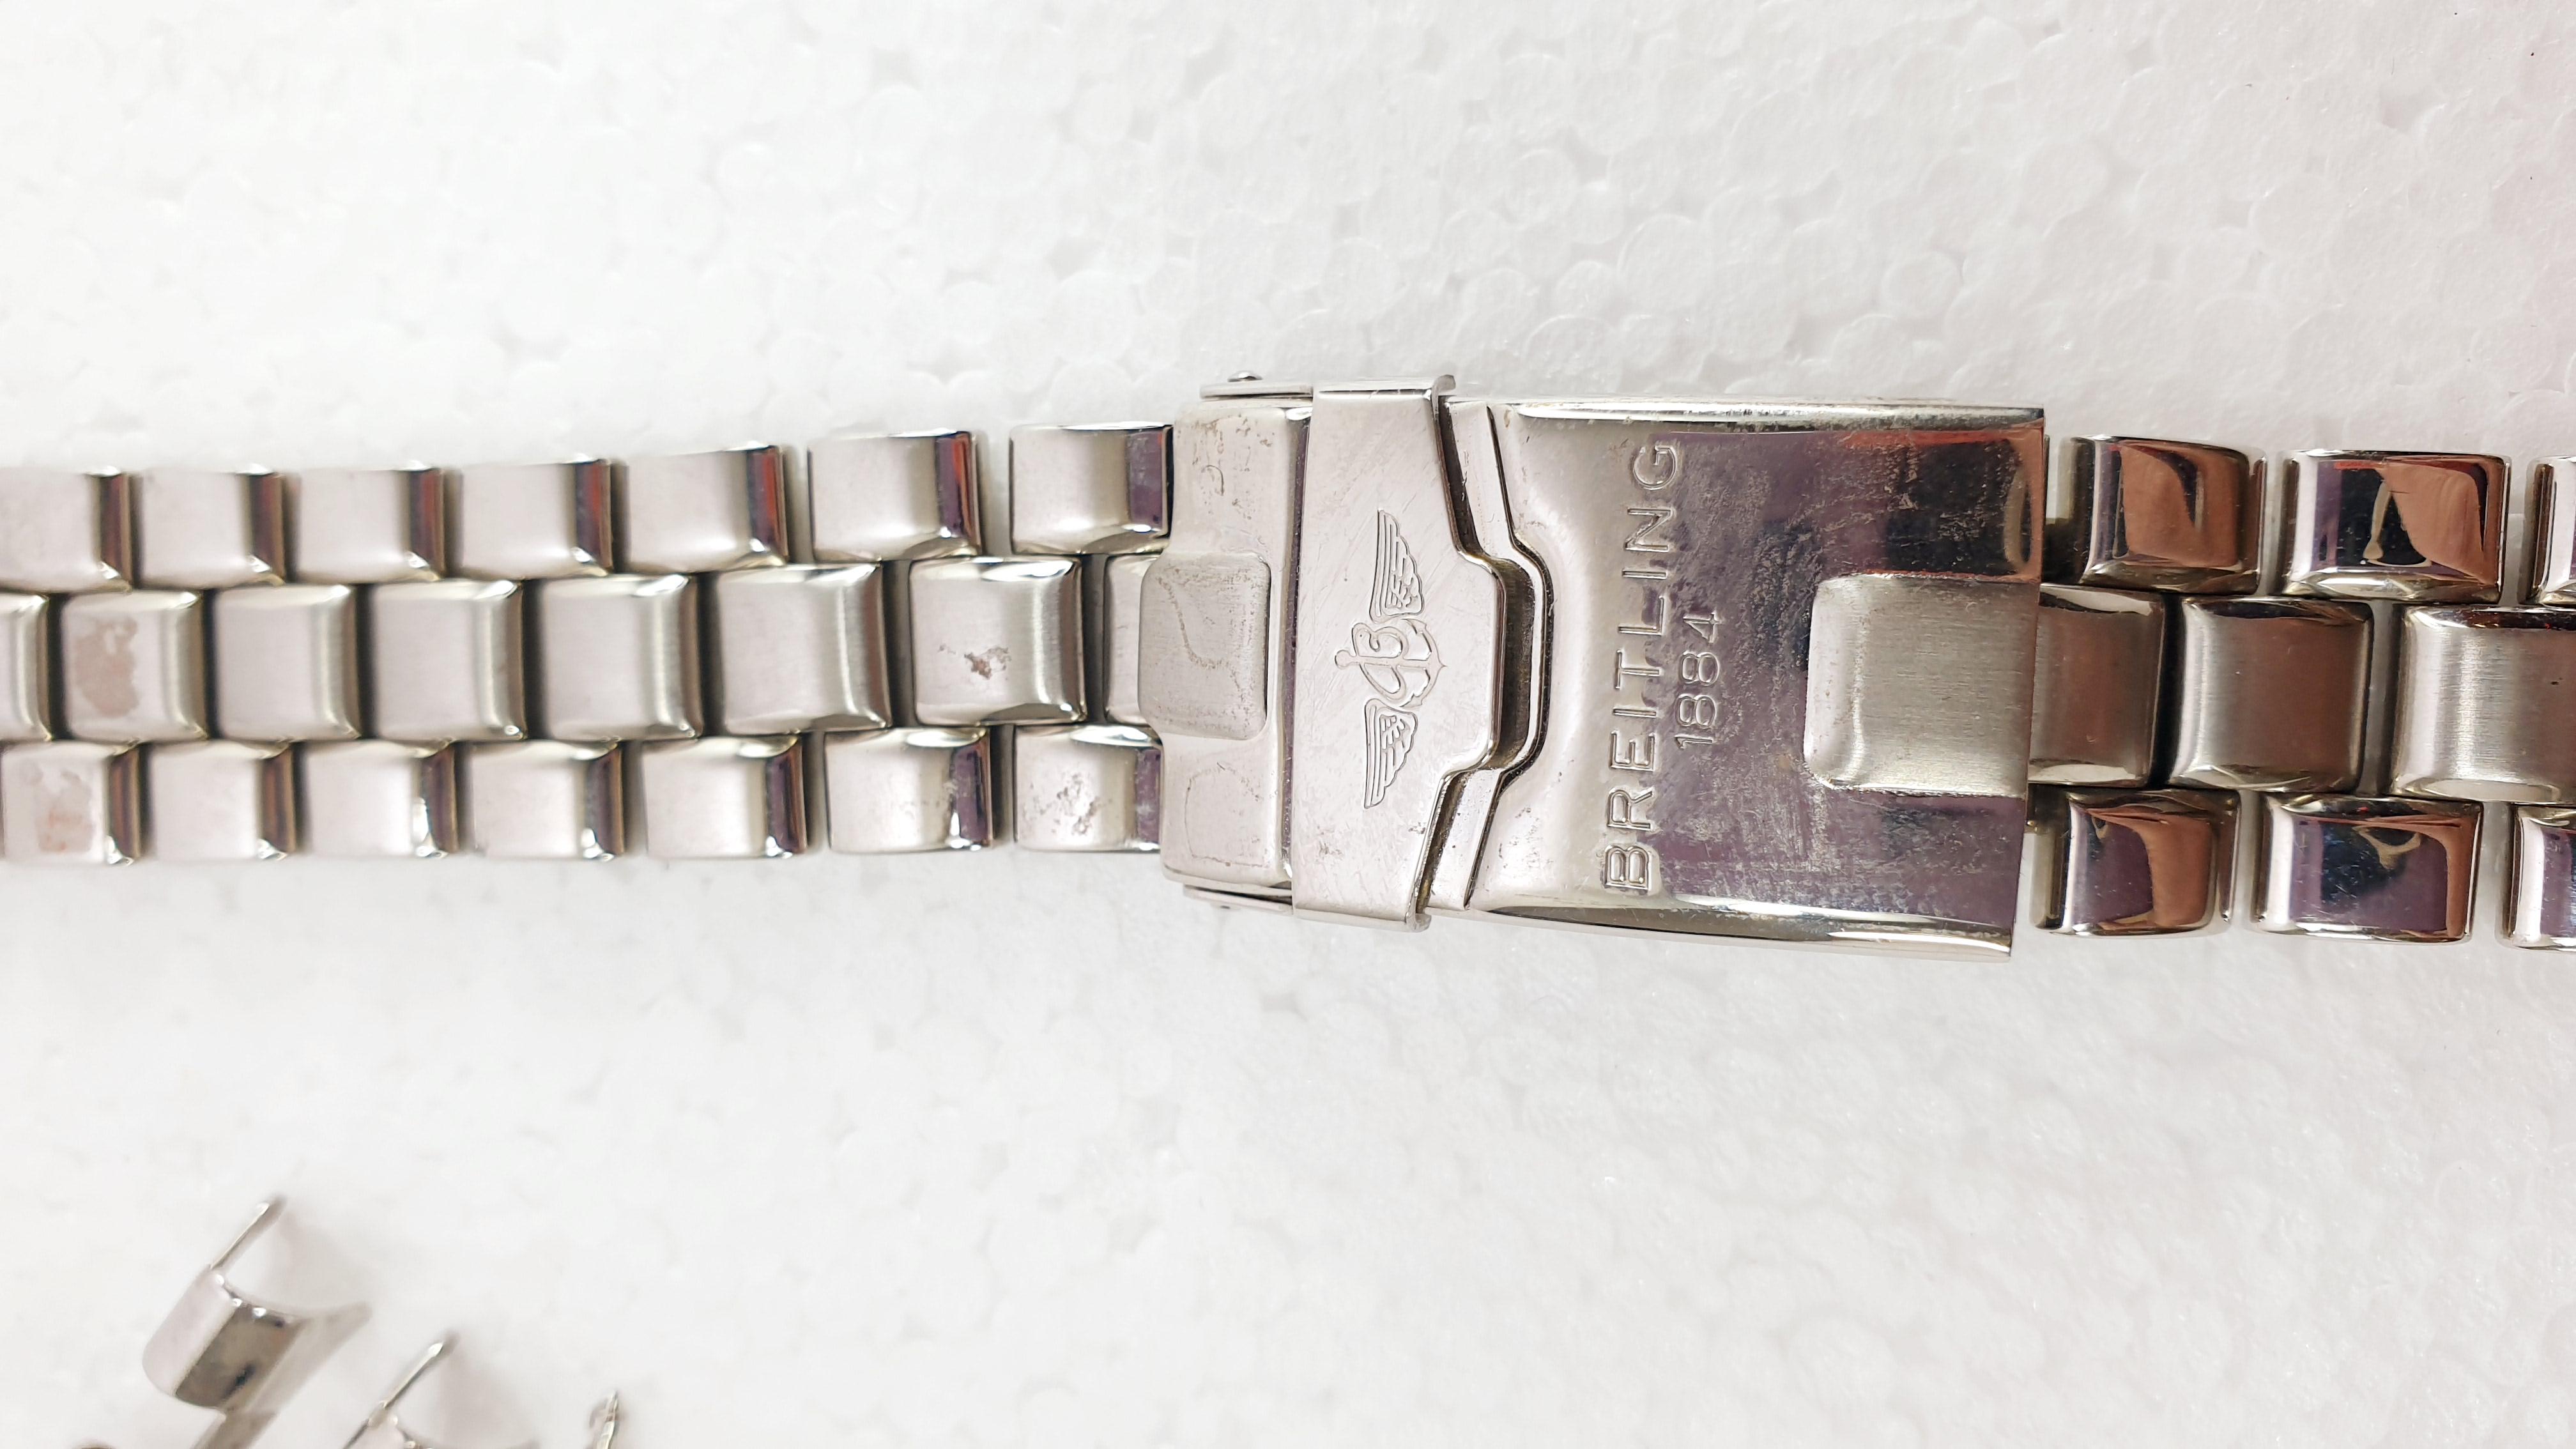 24mm Edelstahl-Breitling-Armband für Breitling-Uhrenarmband mit Breitl-Schließe/Faltschließe

24-mm-Edelstahlarmband für Ihre Breitling-Uhr mit geraden Endgliedern.
Informationen
Handgefertigtes Produkt
MATERIAL: Rostfreier Stahl

Breitling SA ist